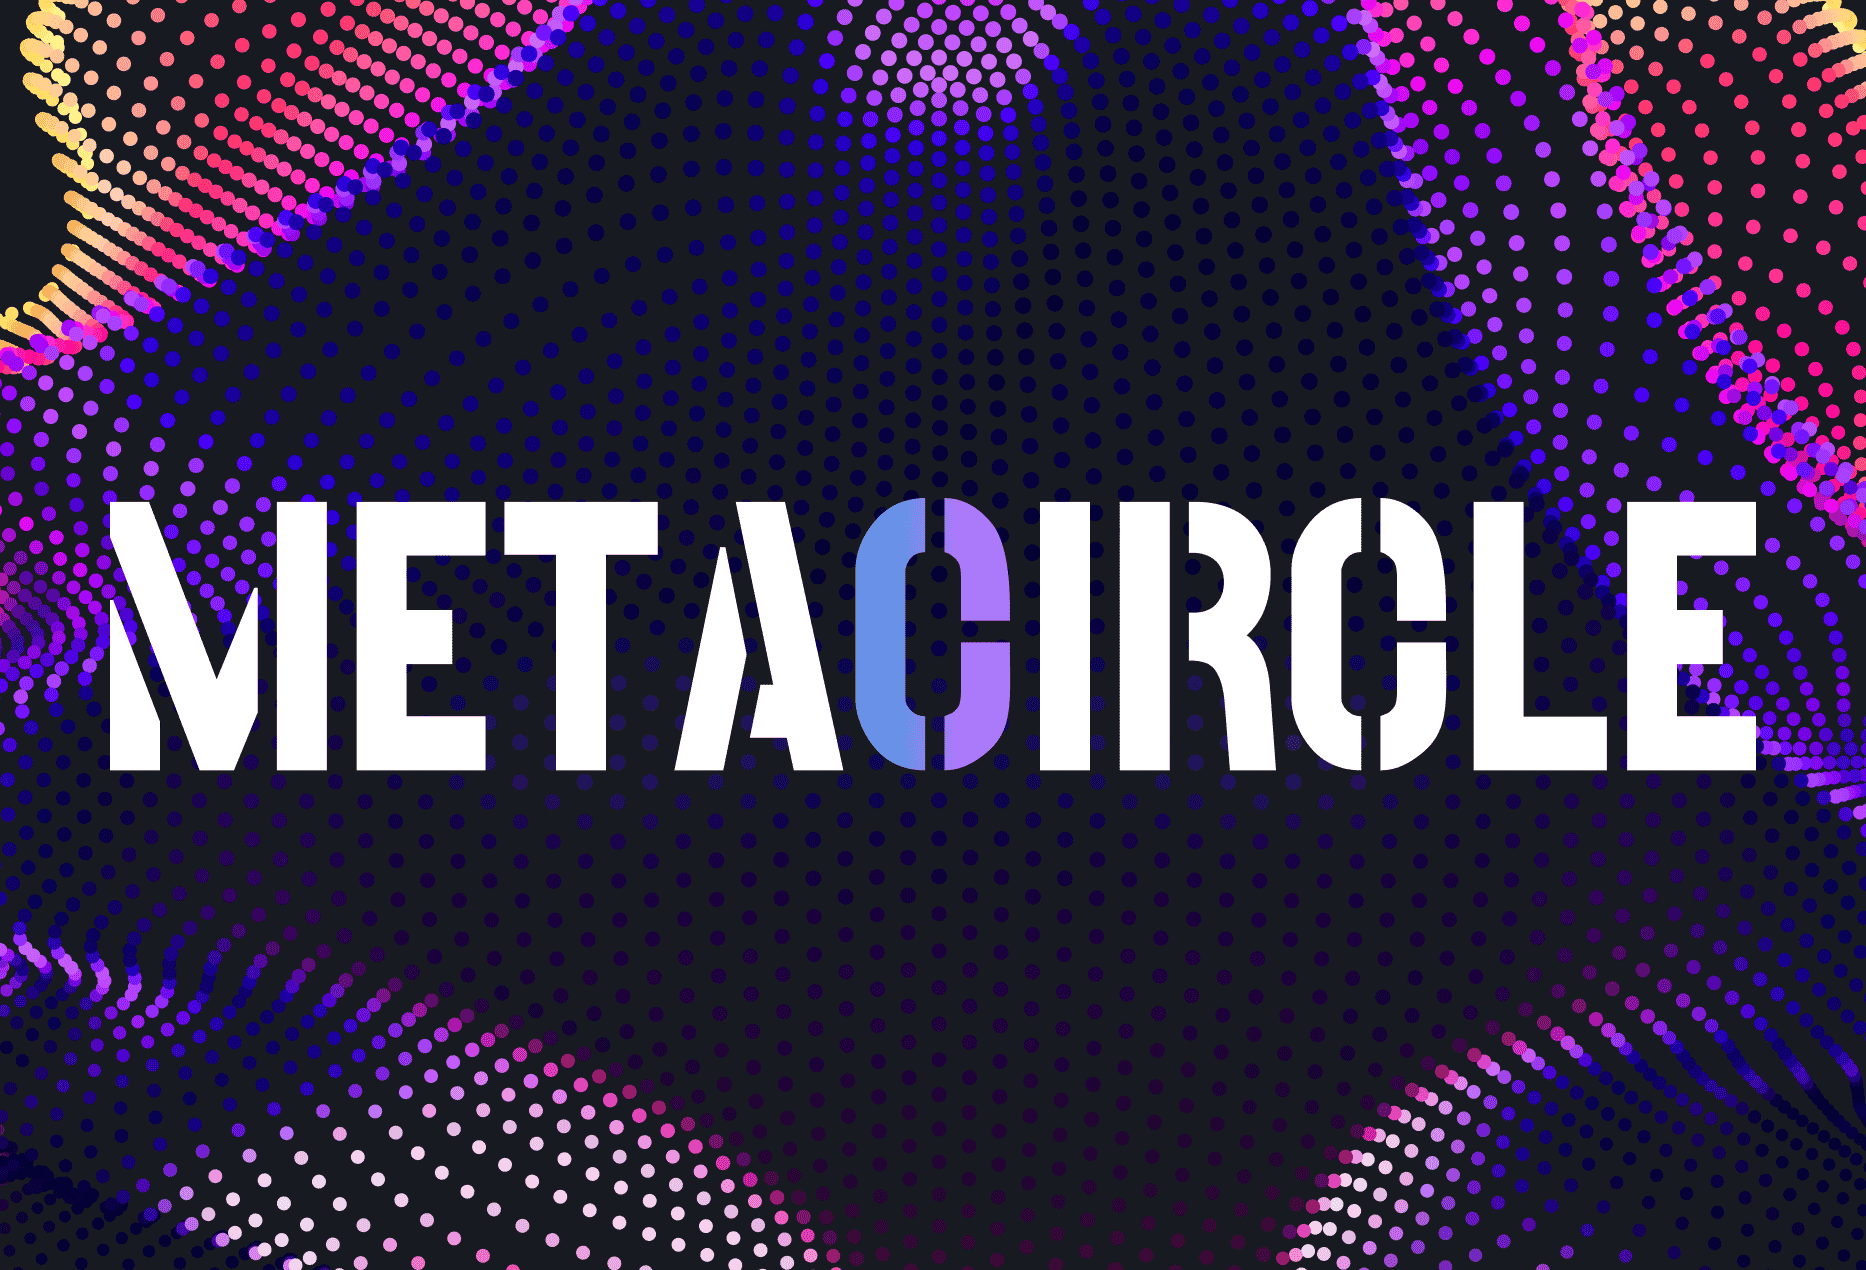 Metacircle